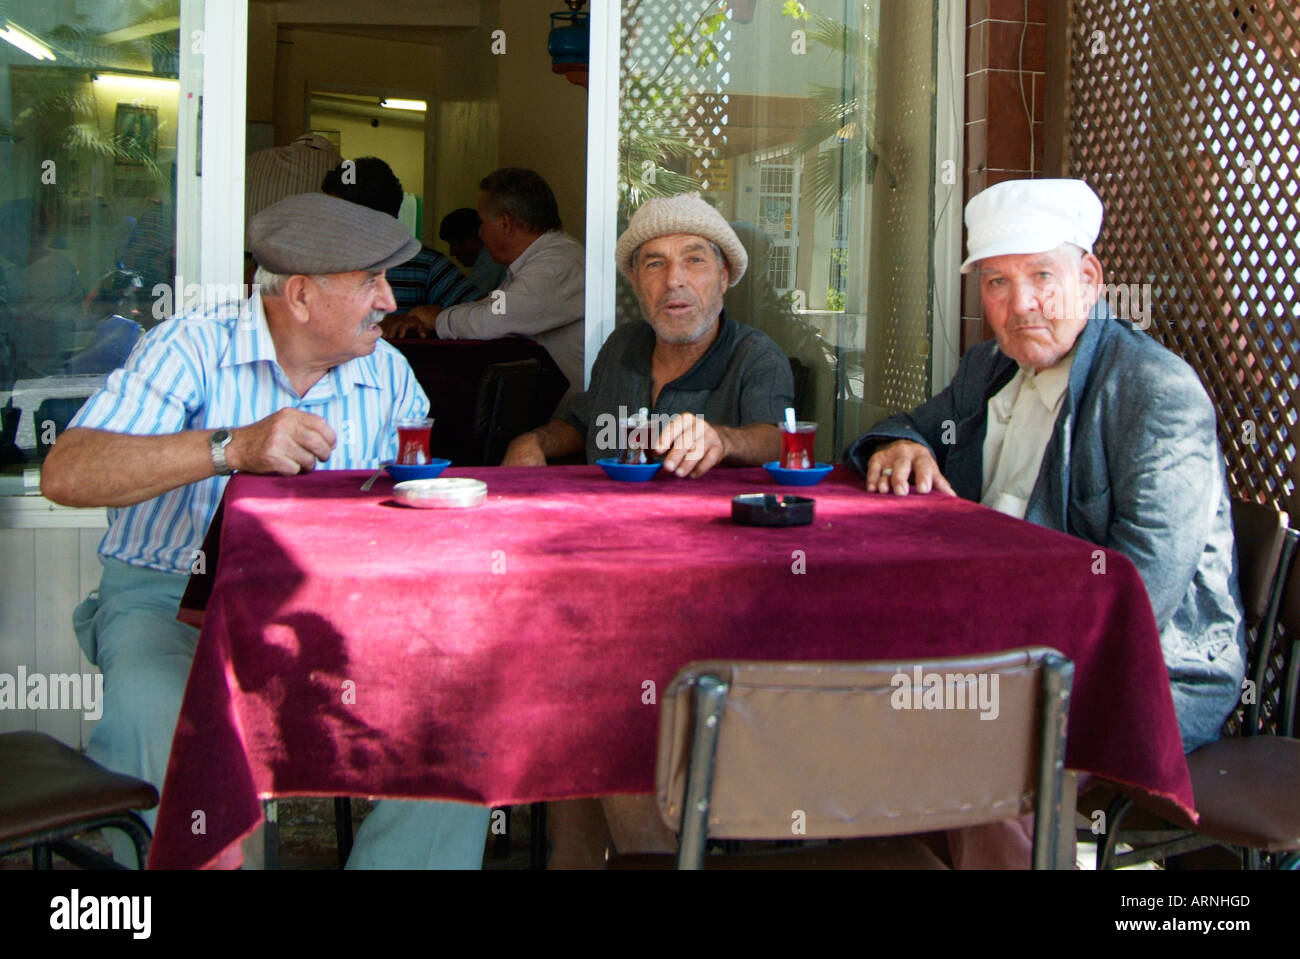 Men old café table talk converse communicate retire pension hat cap  tradition wait rest argue debate Turk Turkey Turkish Stock Photo - Alamy